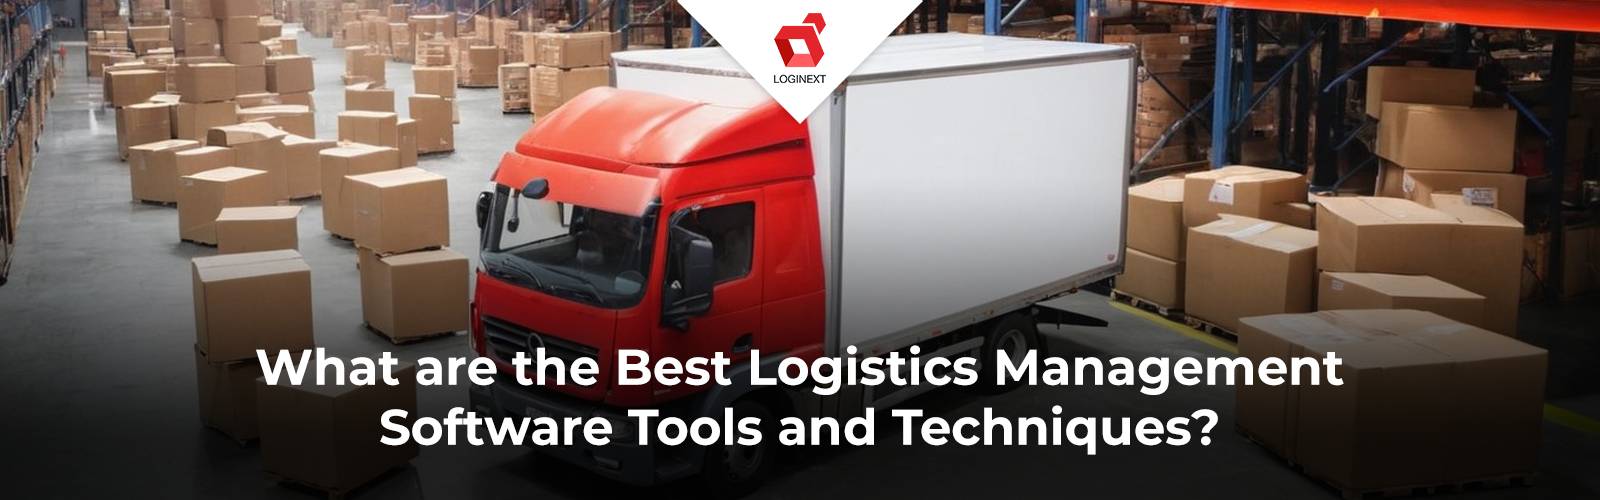 Beste softwaretools en -technieken voor logistiek management